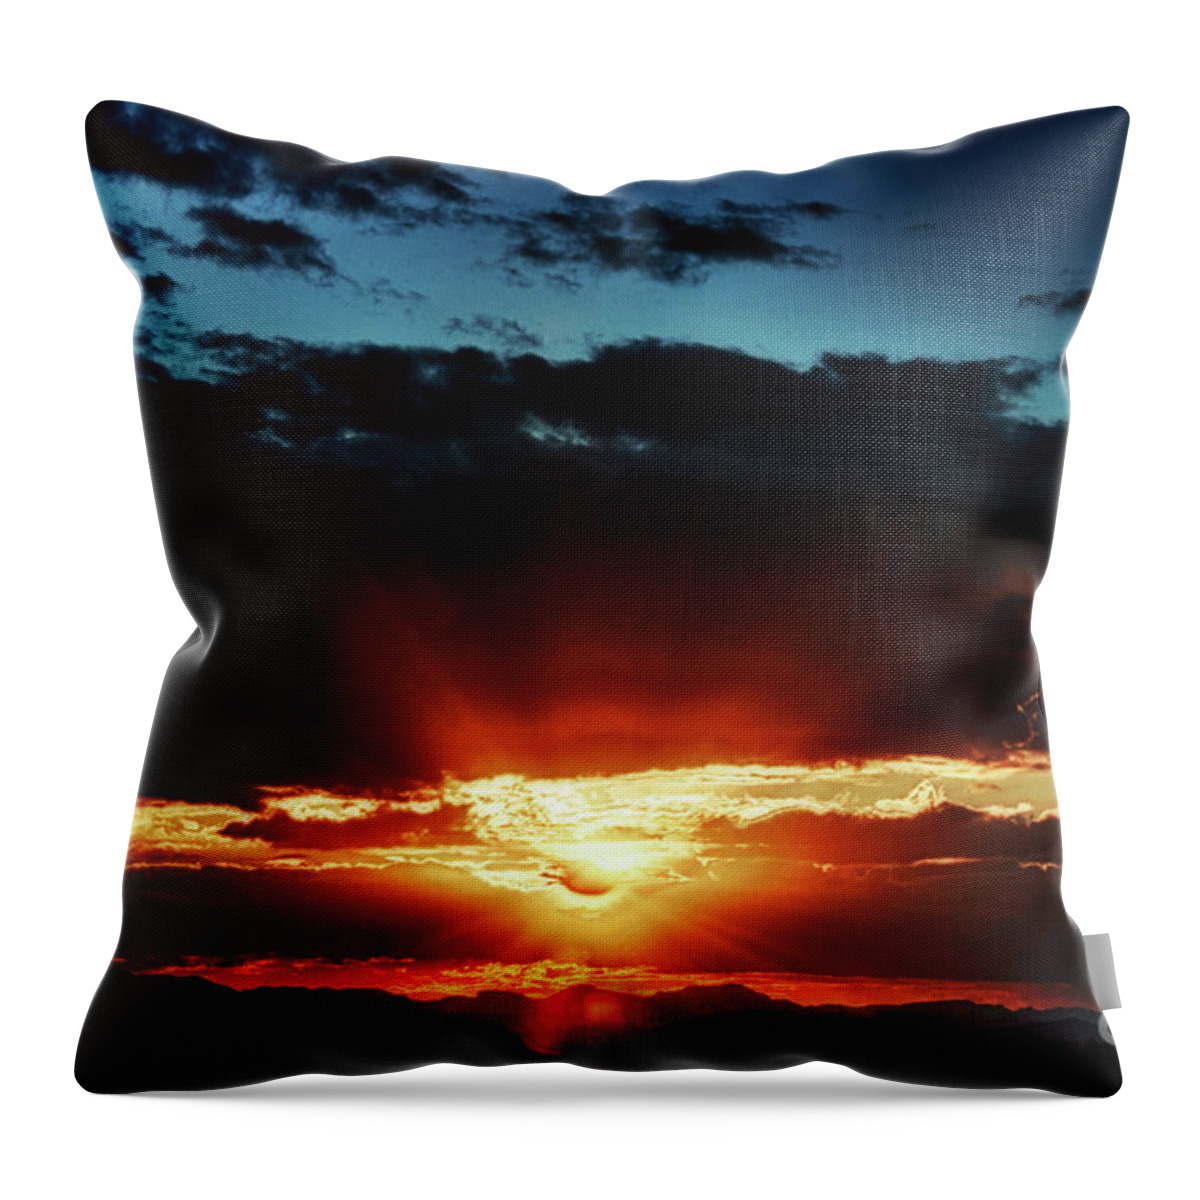 Arizona Throw Pillow featuring the photograph Superstition Sunrise by Saija Lehtonen